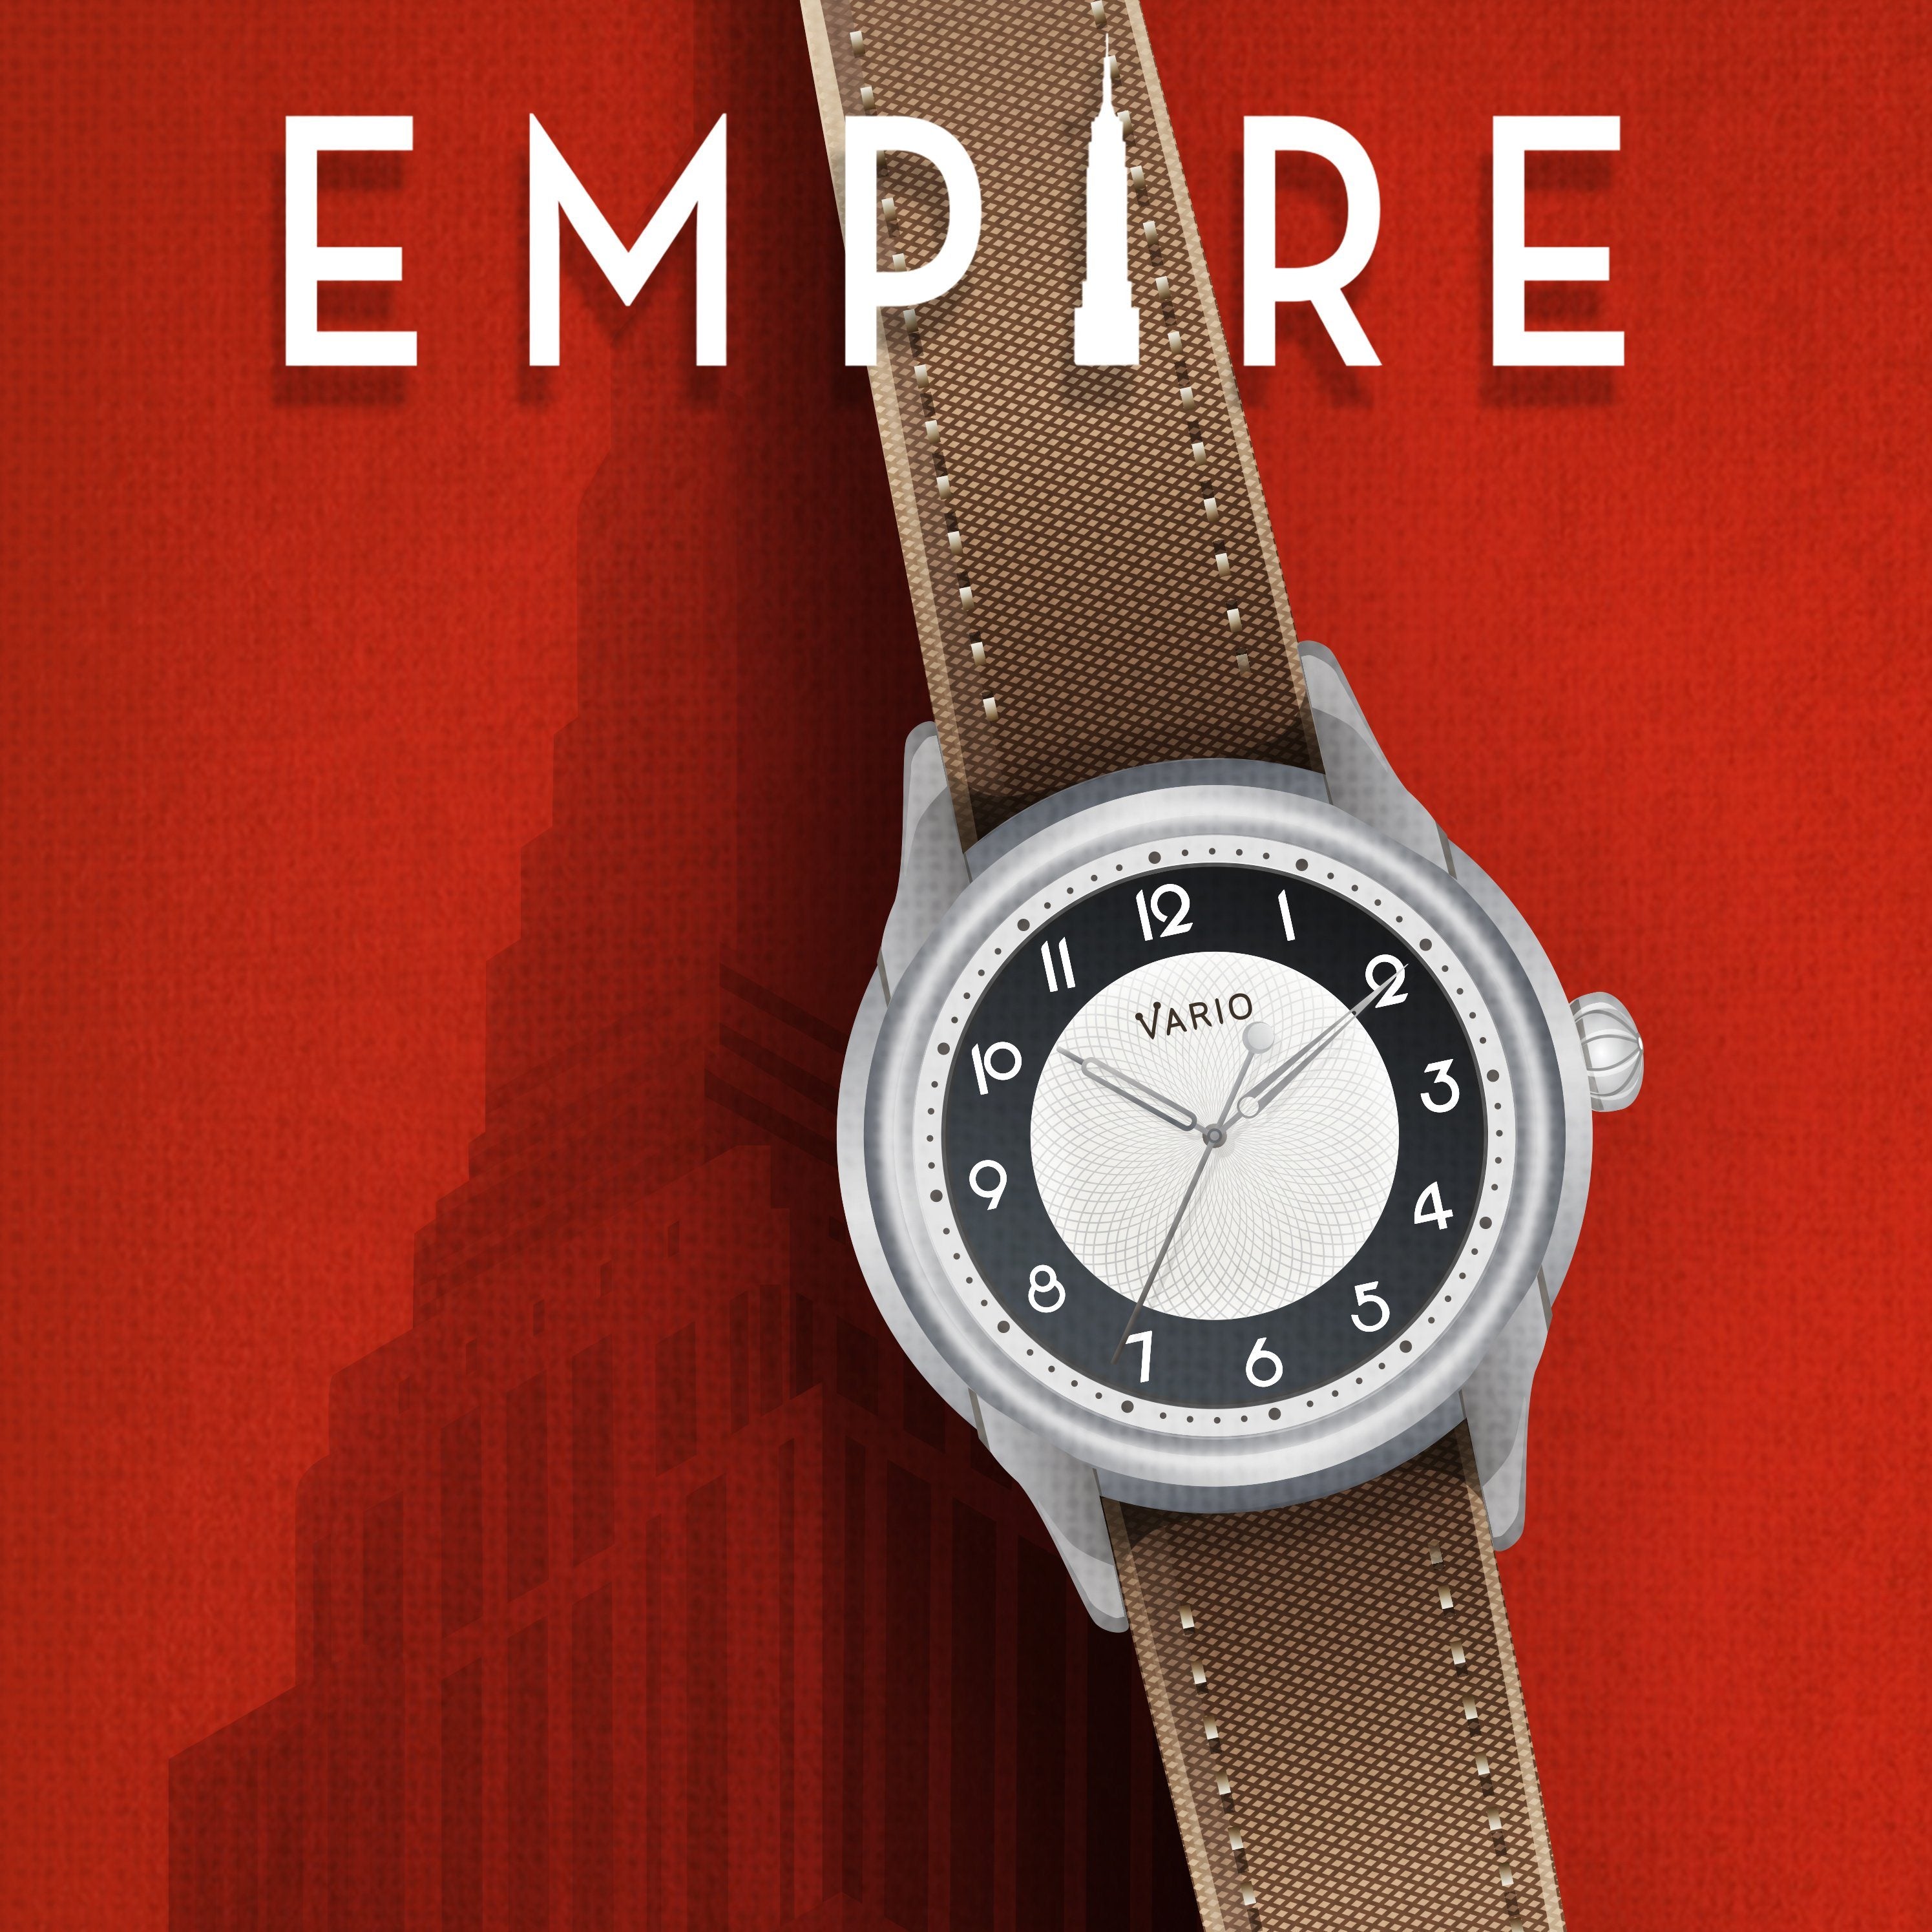 Vario Empire Watch